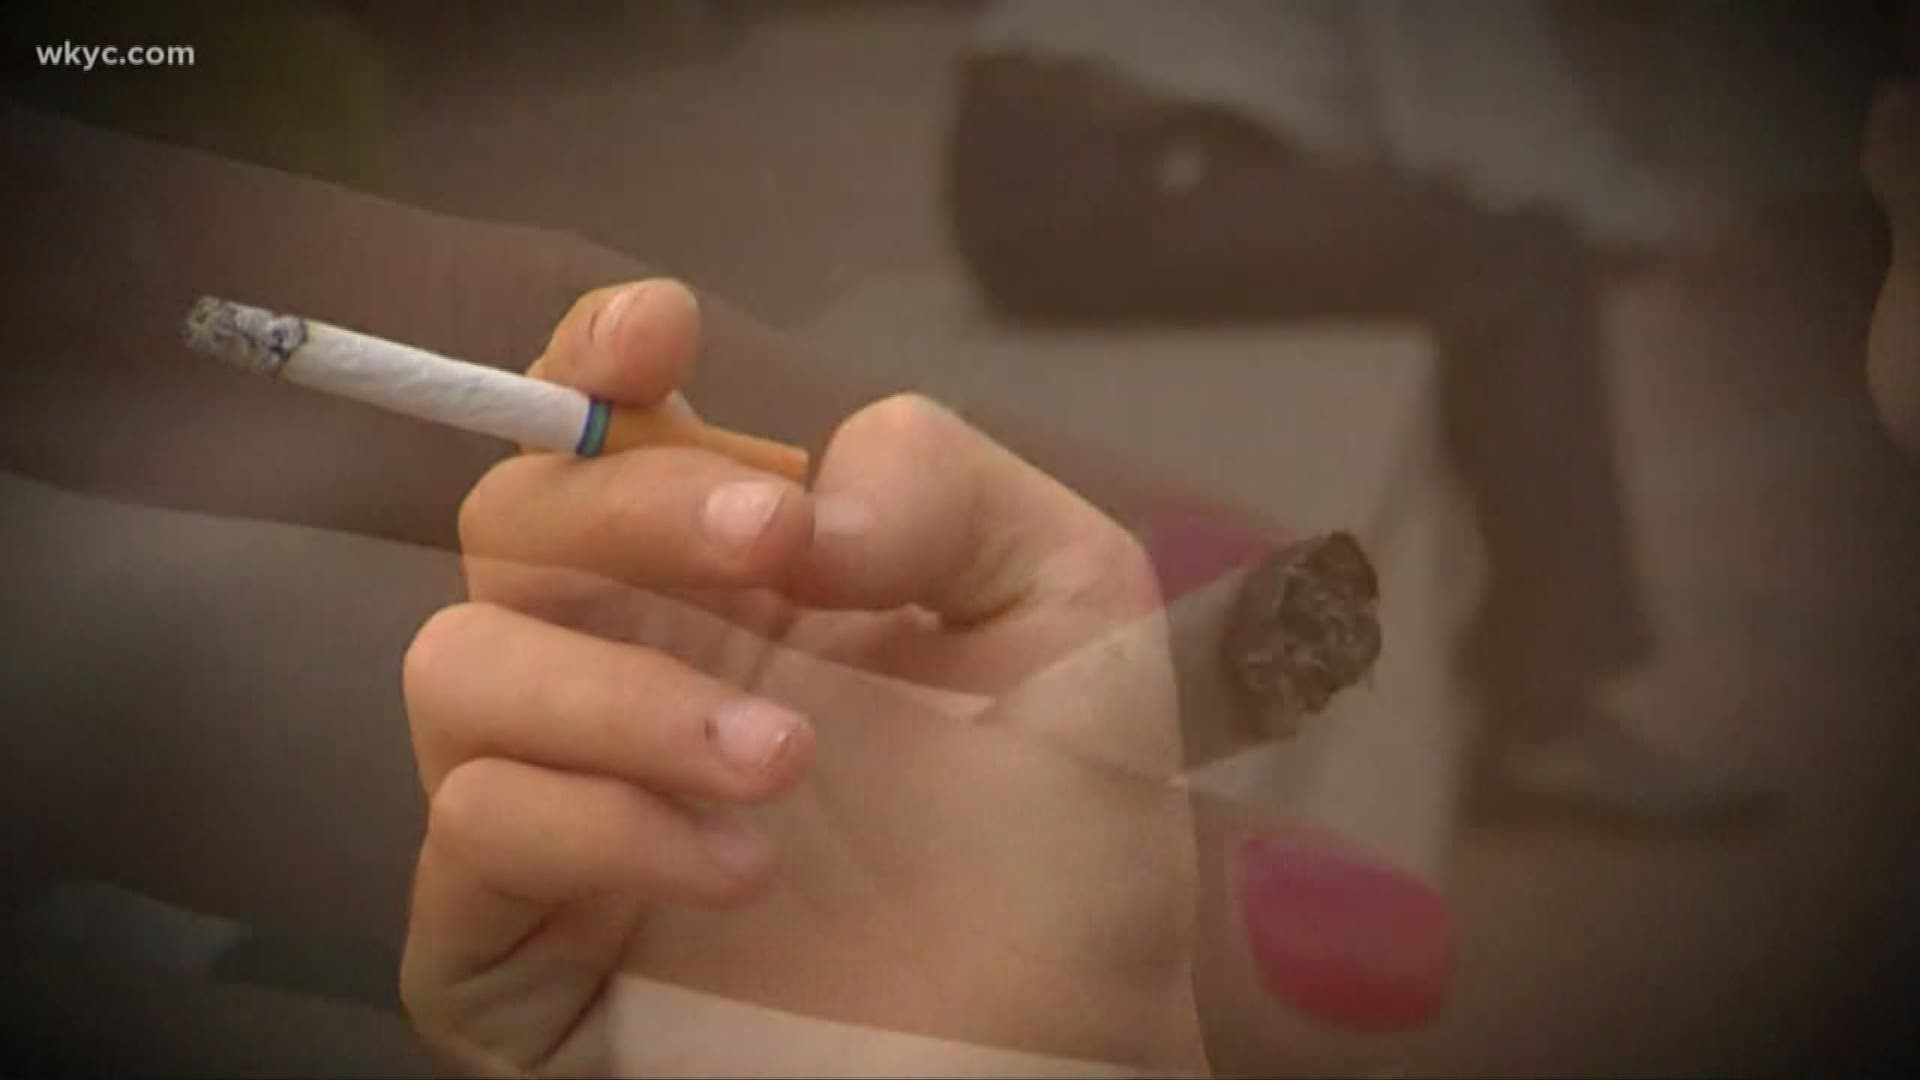 Legal smoking age raised to 21